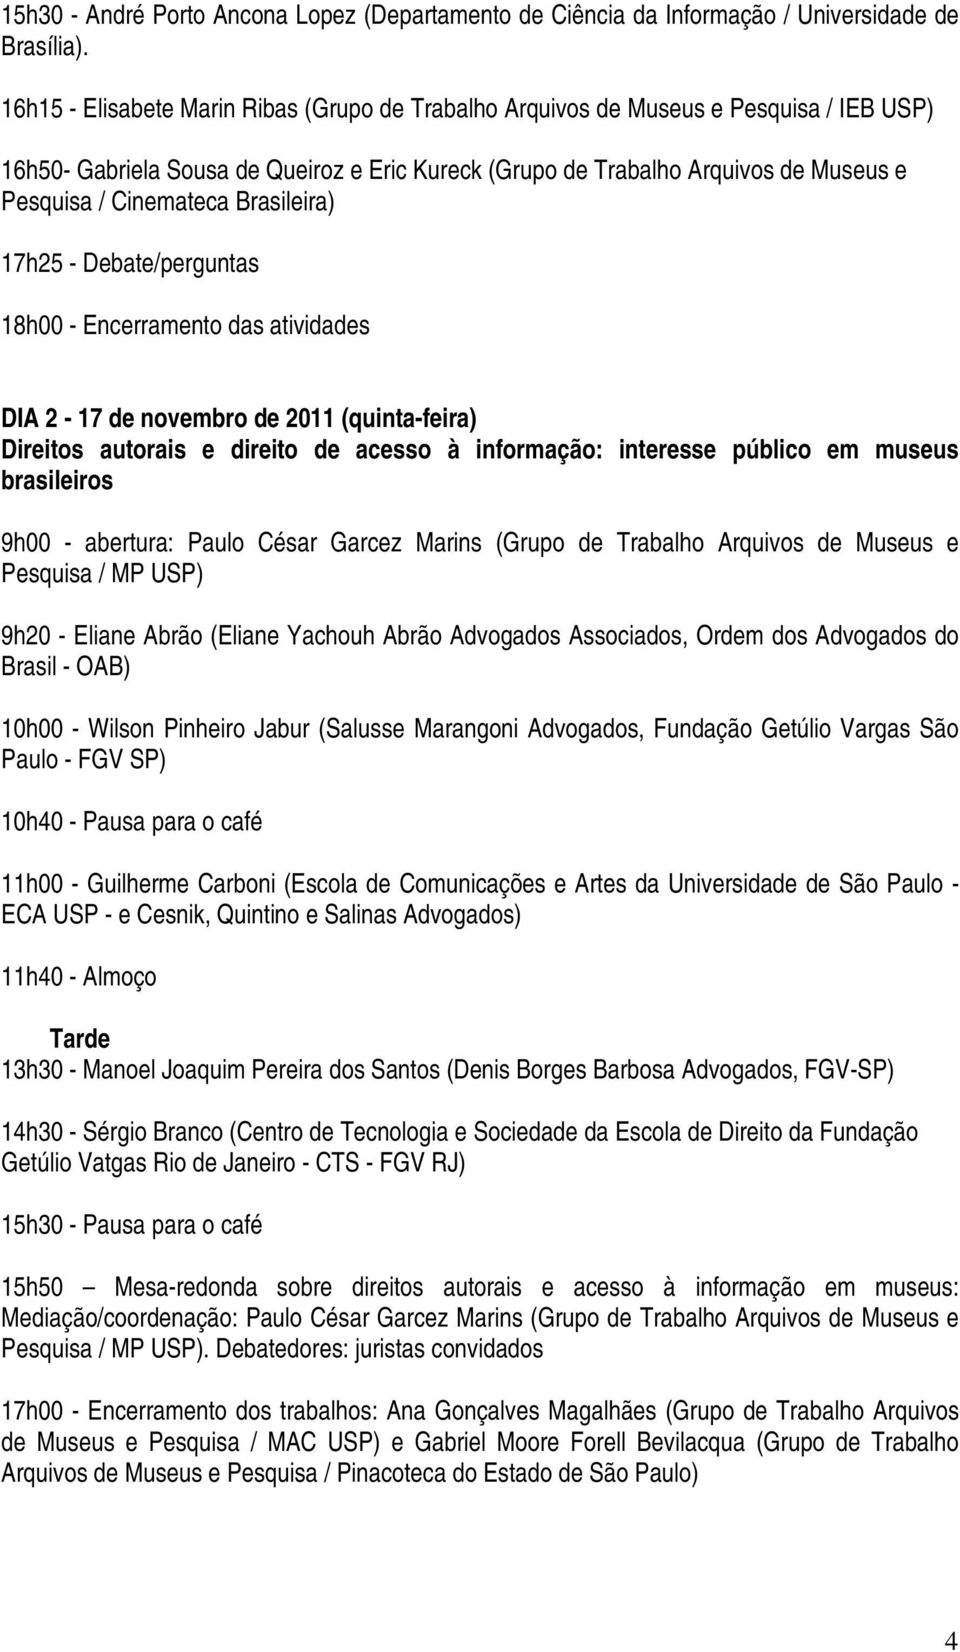 Brasileira) 17h25 - Debate/perguntas 18h00 - Encerramento das atividades DIA 2-17 de novembro de 2011 (quinta-feira) Direitos autorais e direito de acesso à informação: interesse público em museus